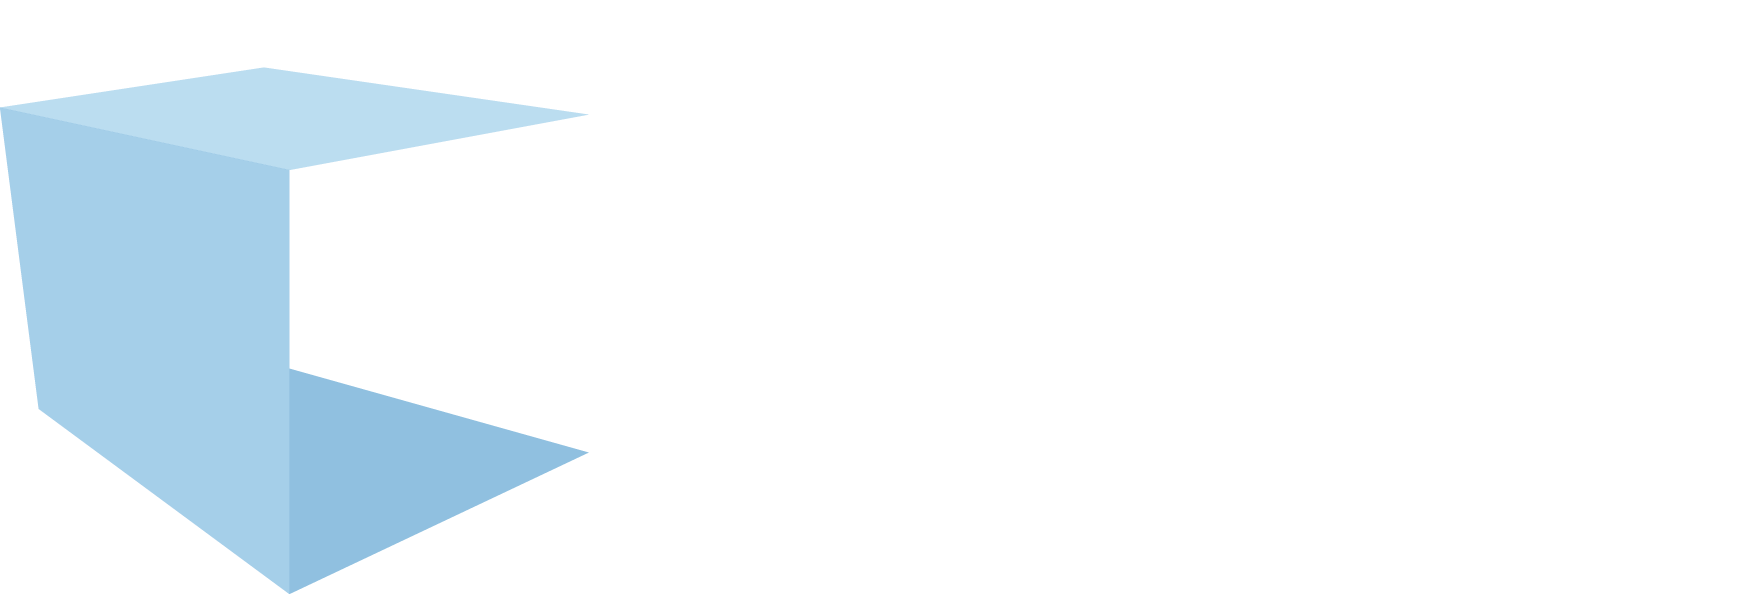 Moralbox footer logo